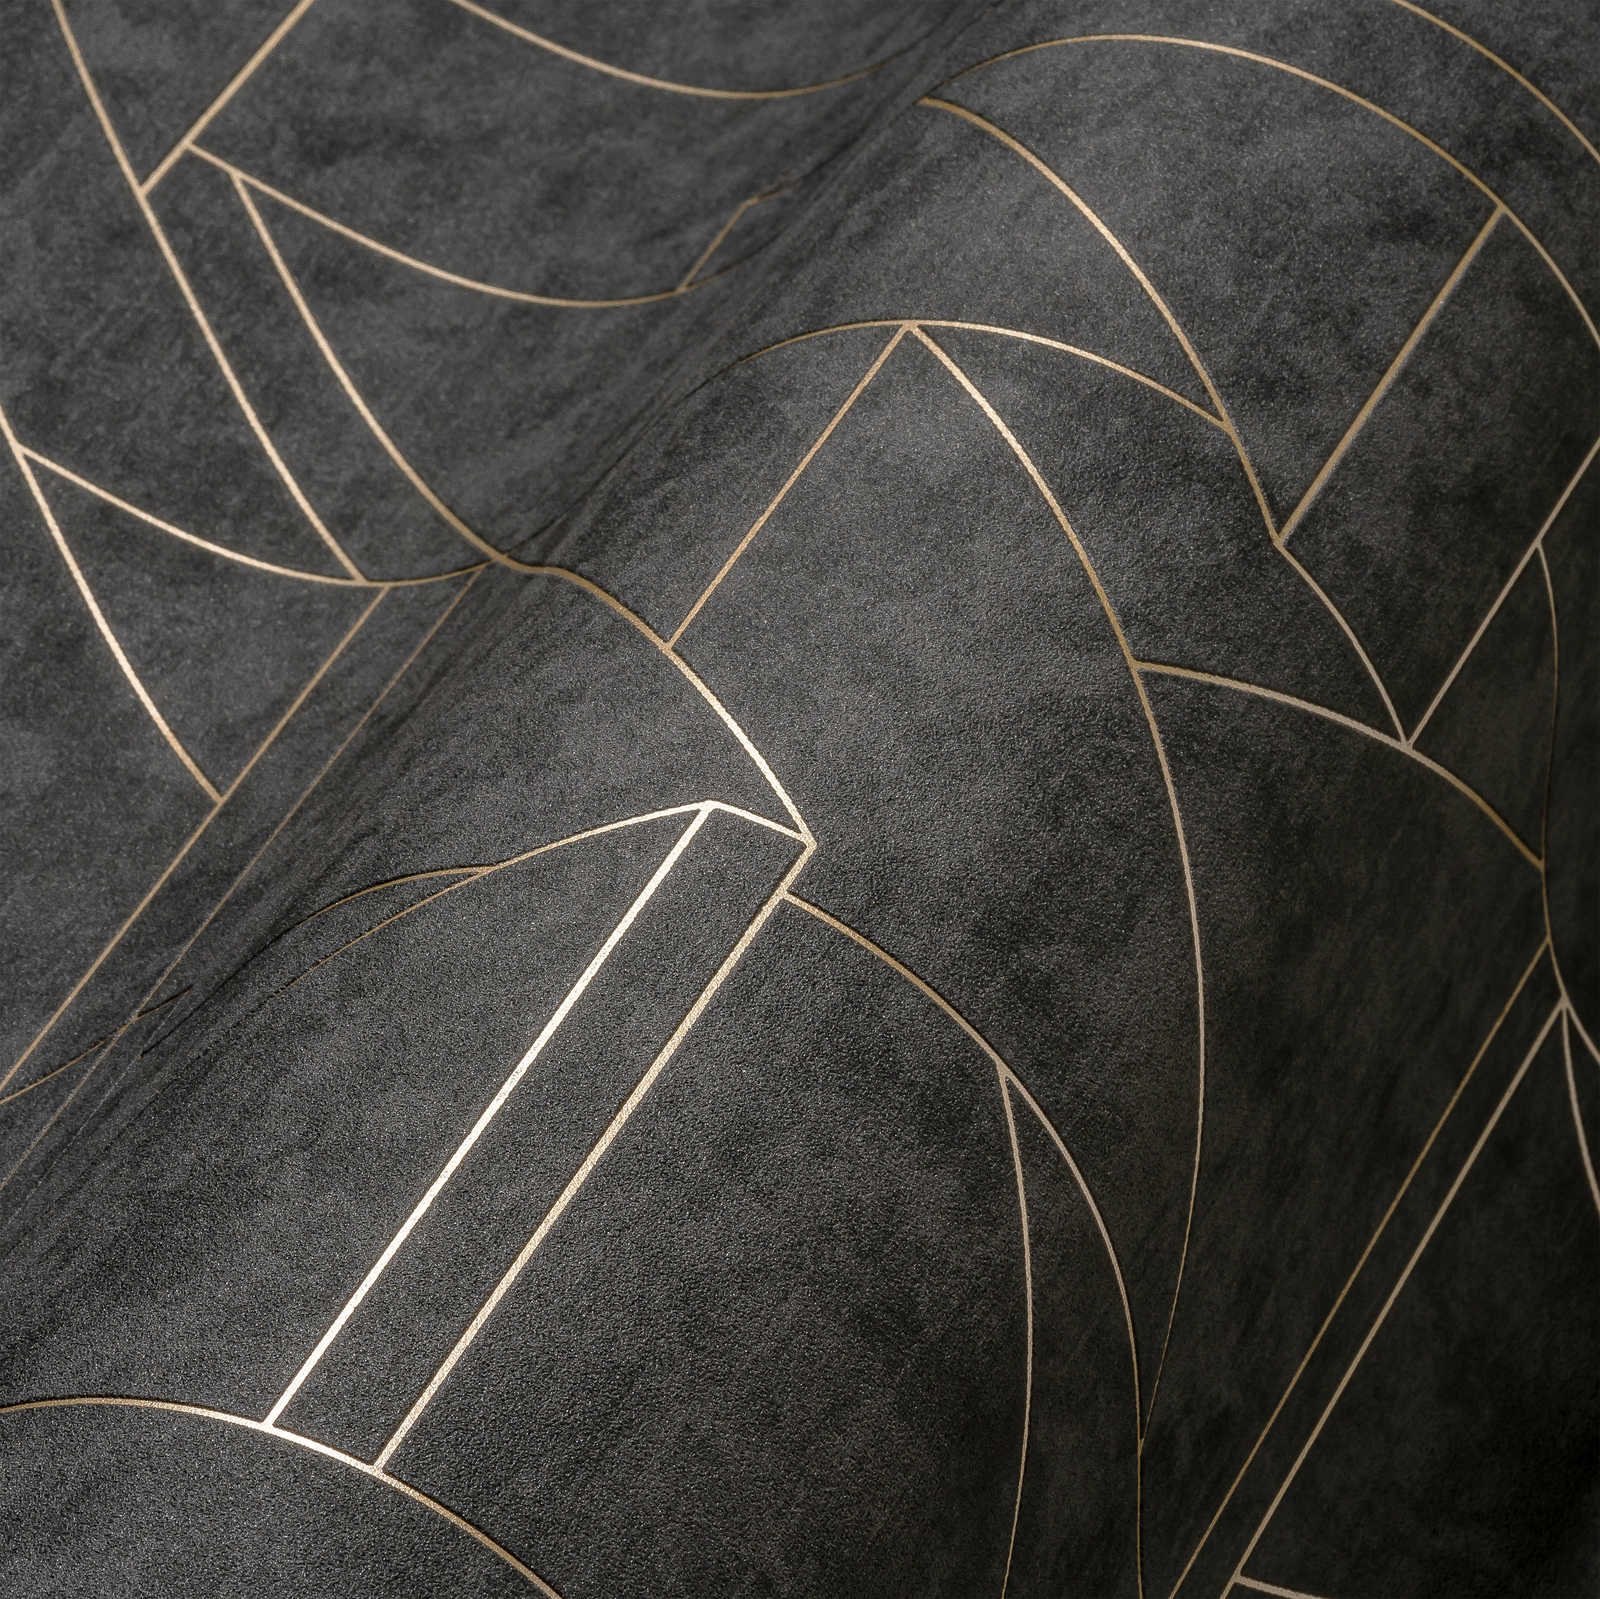             Papier peint intissé à motif de lignes discrètes - noir, or
        